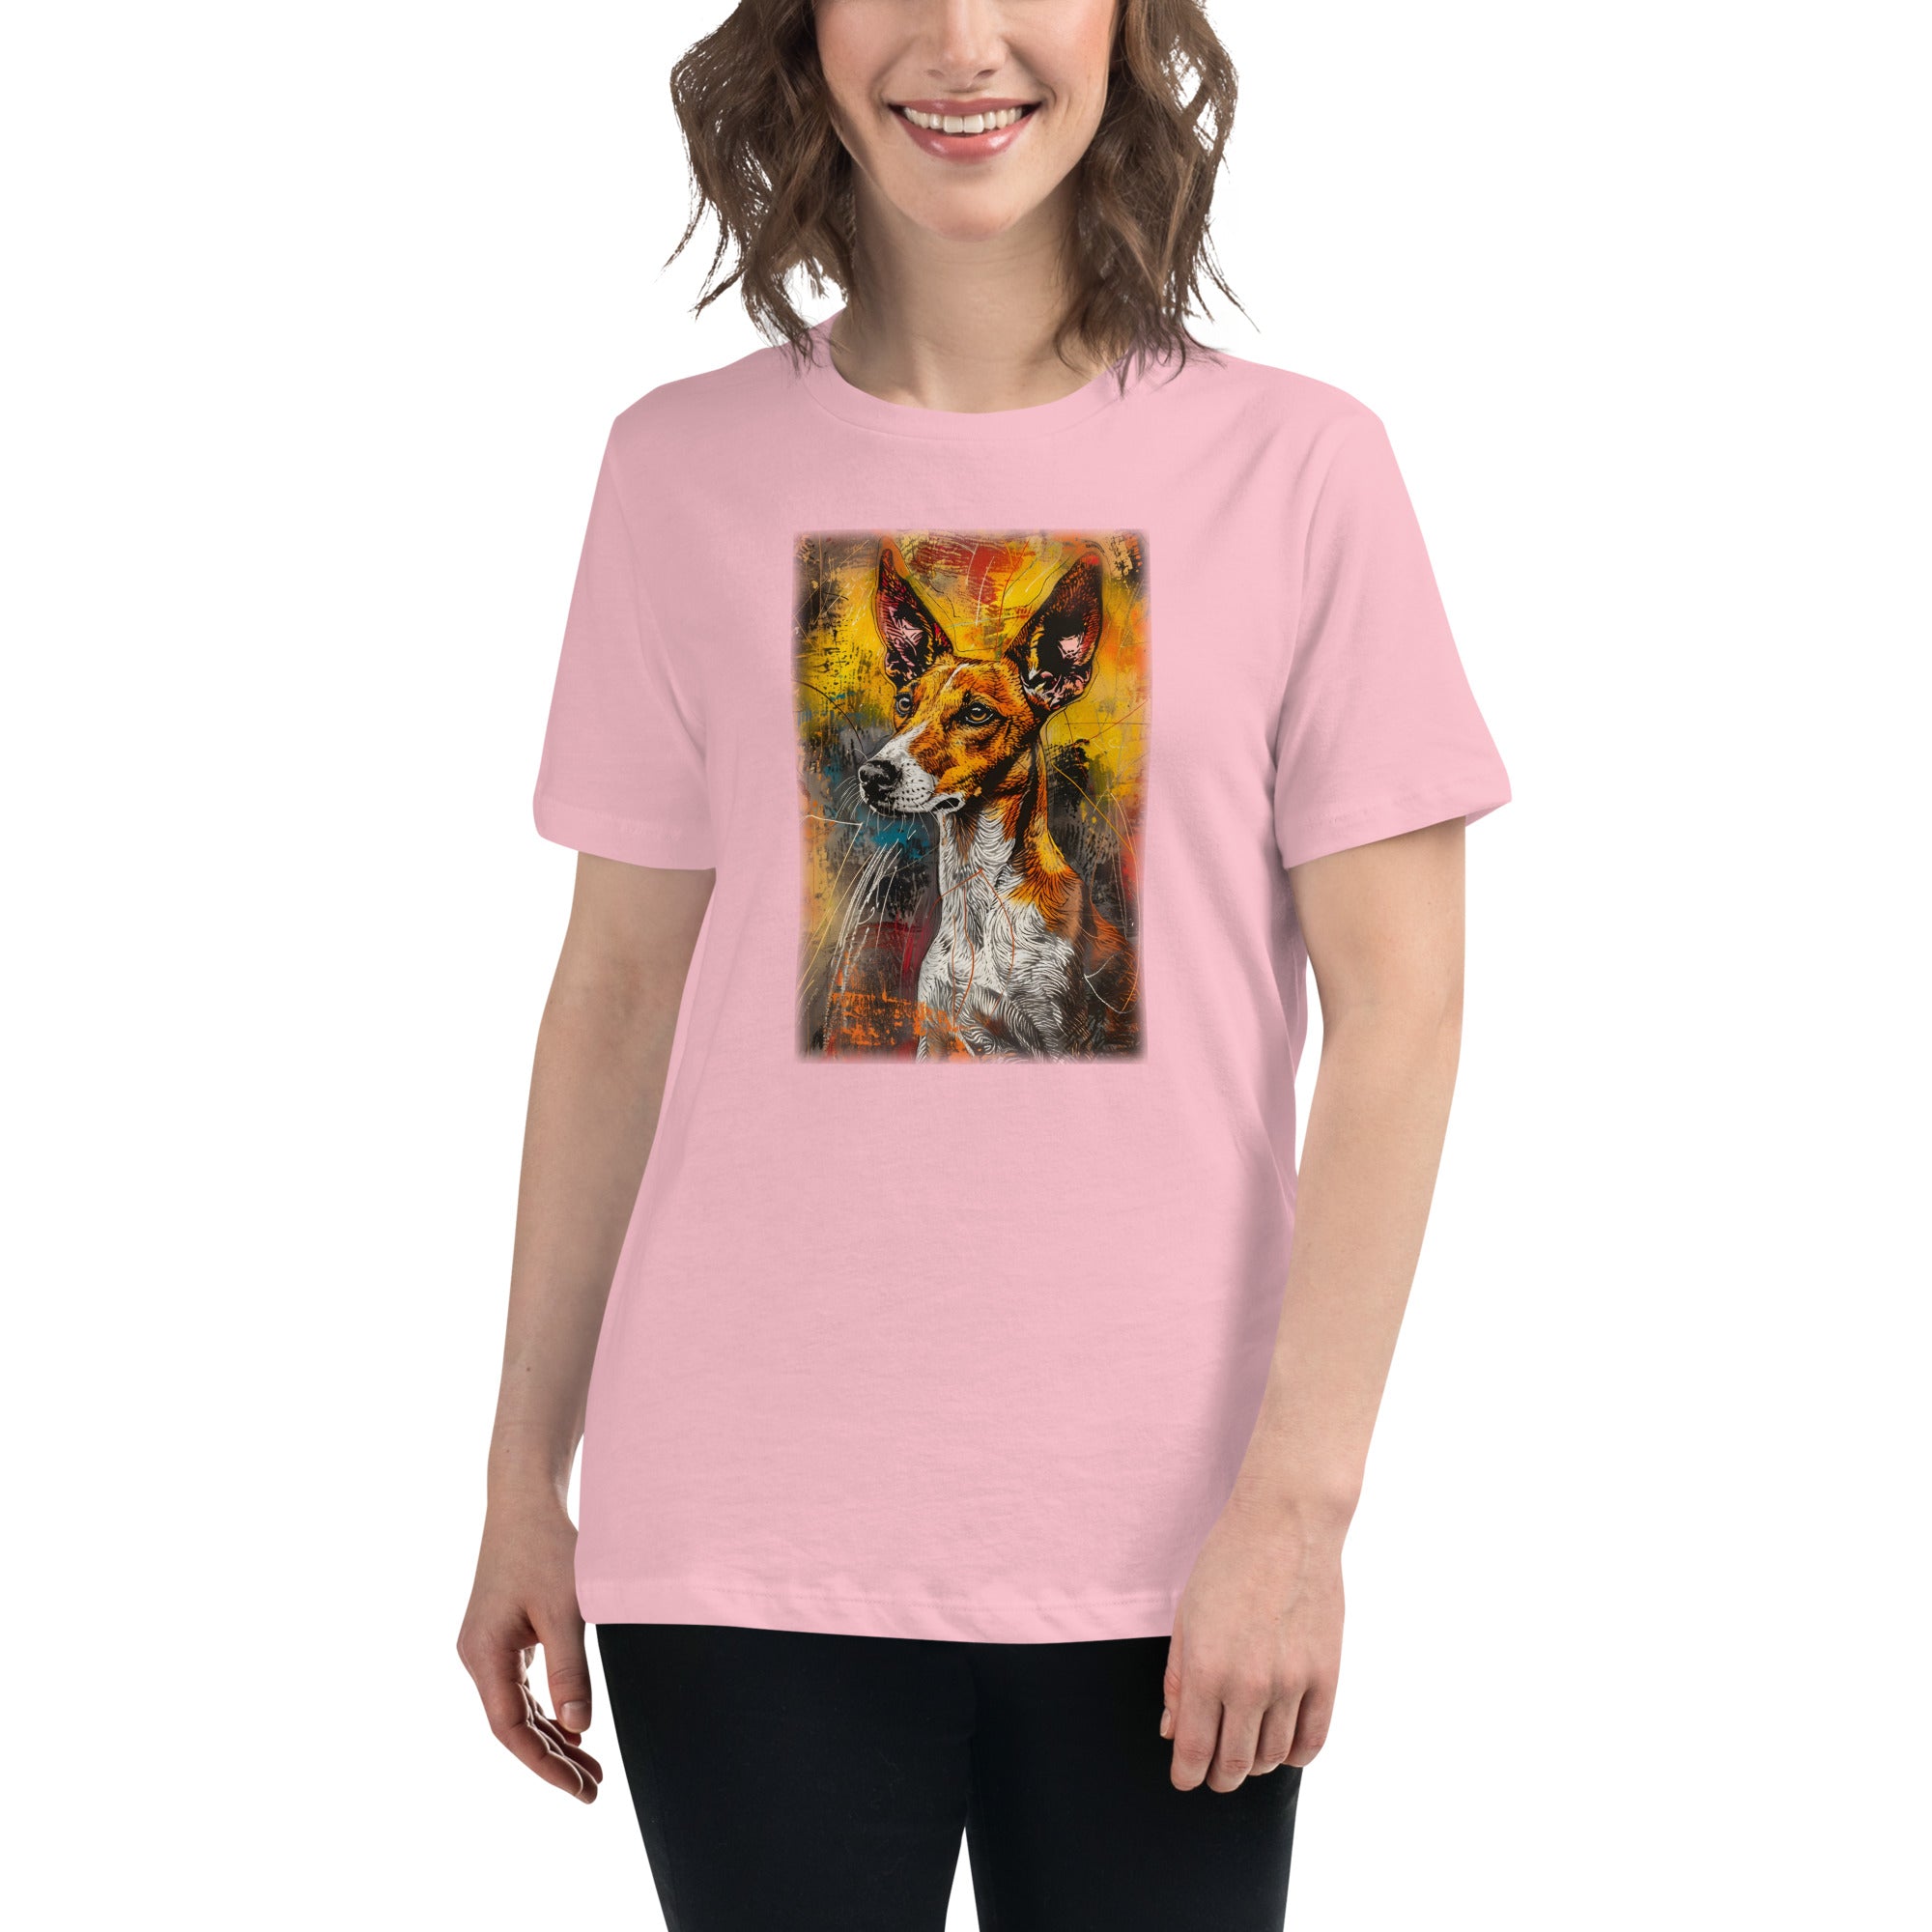 Ibizan Hound Women's Relaxed T-Shirt